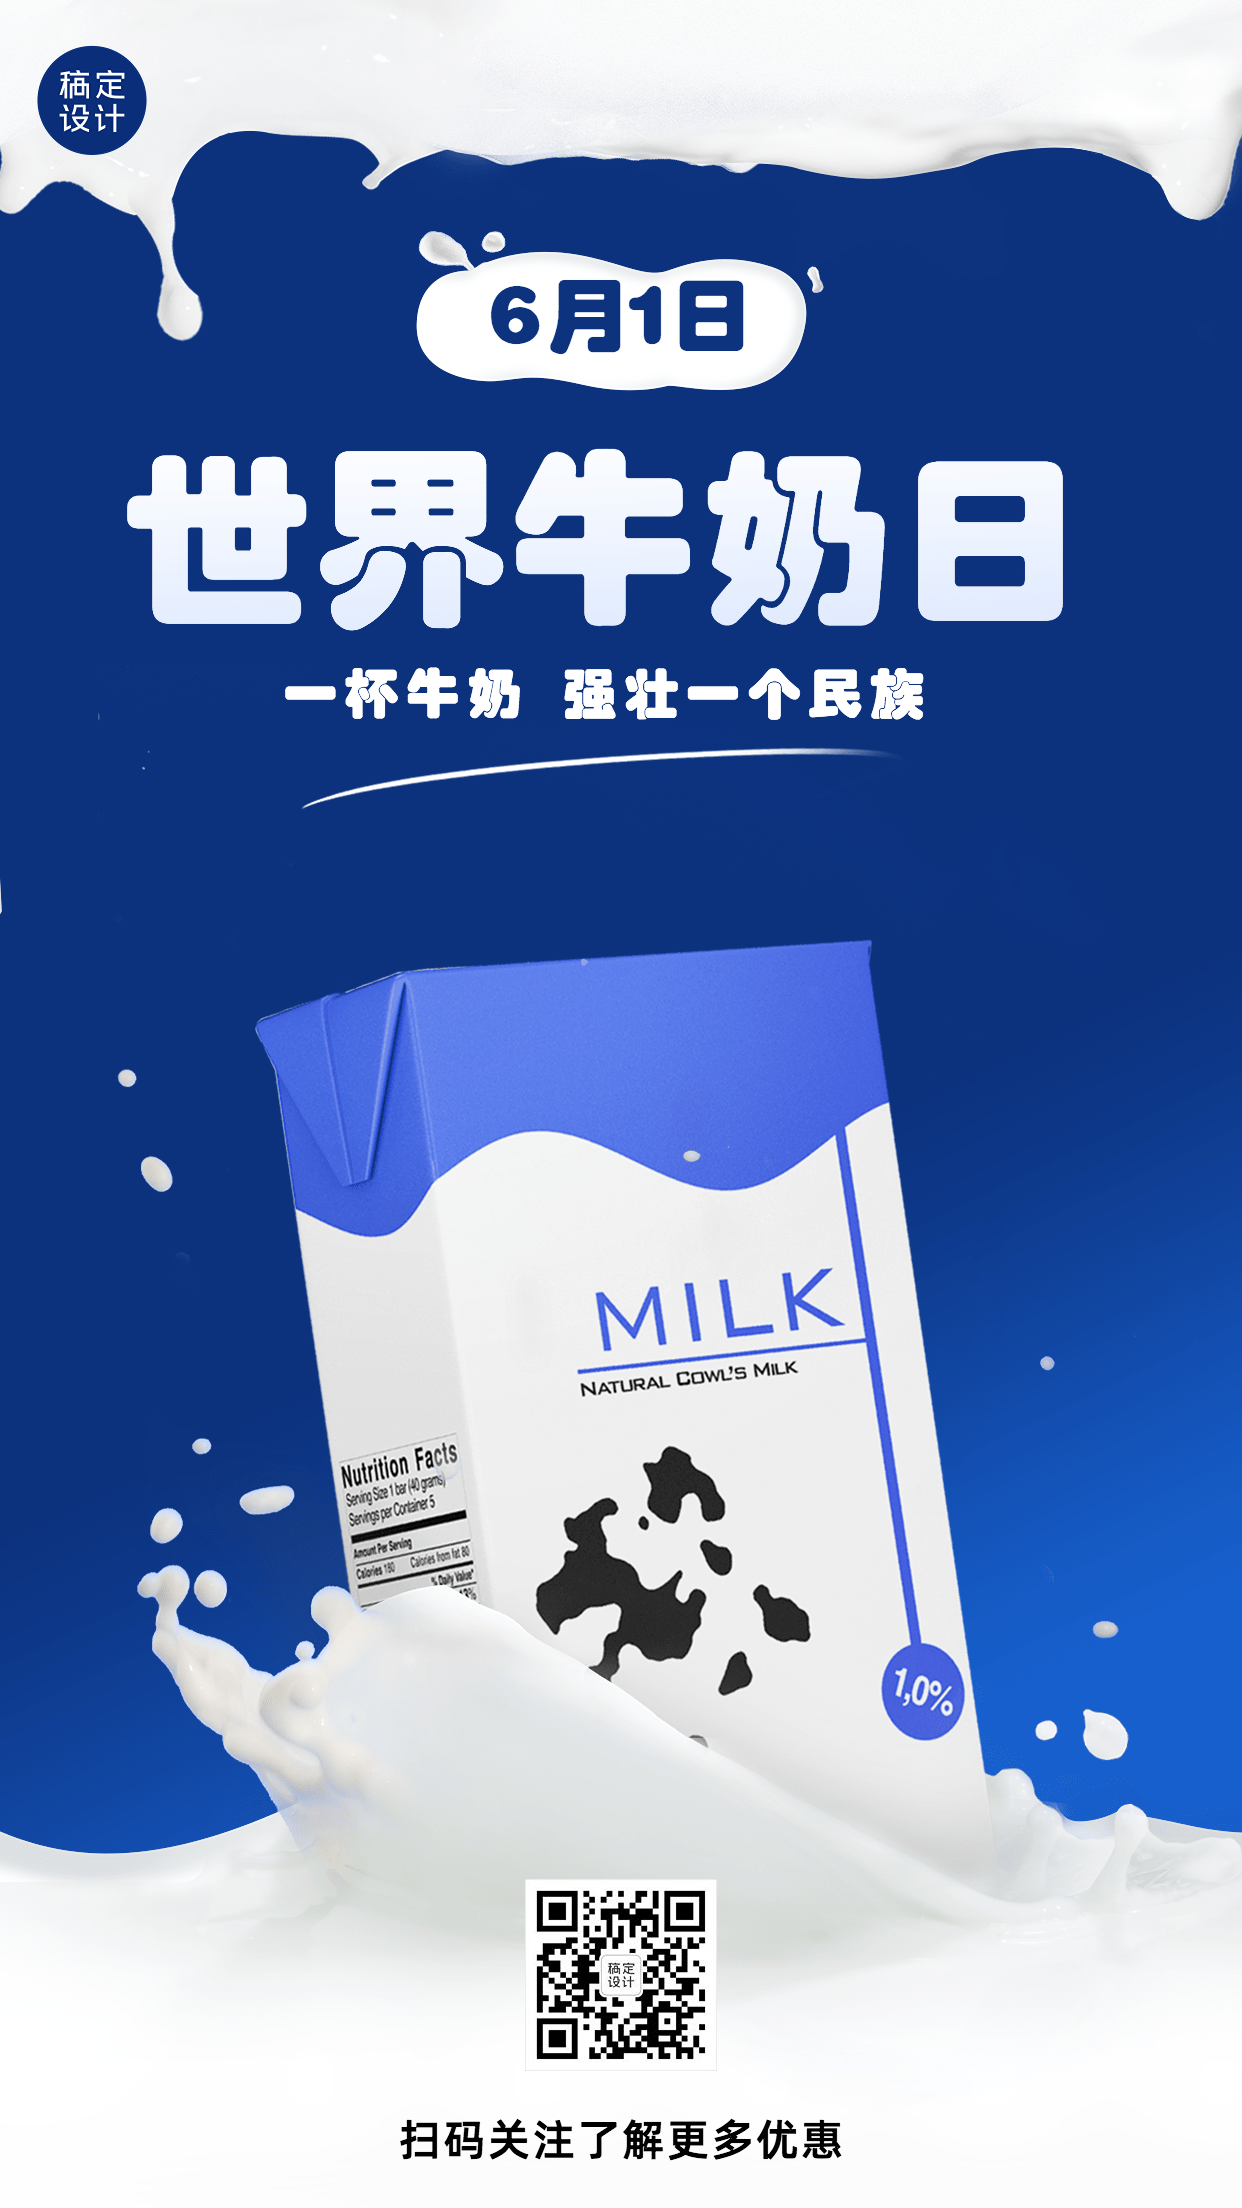 世界牛奶日节日宣传简约创意手机海报预览效果